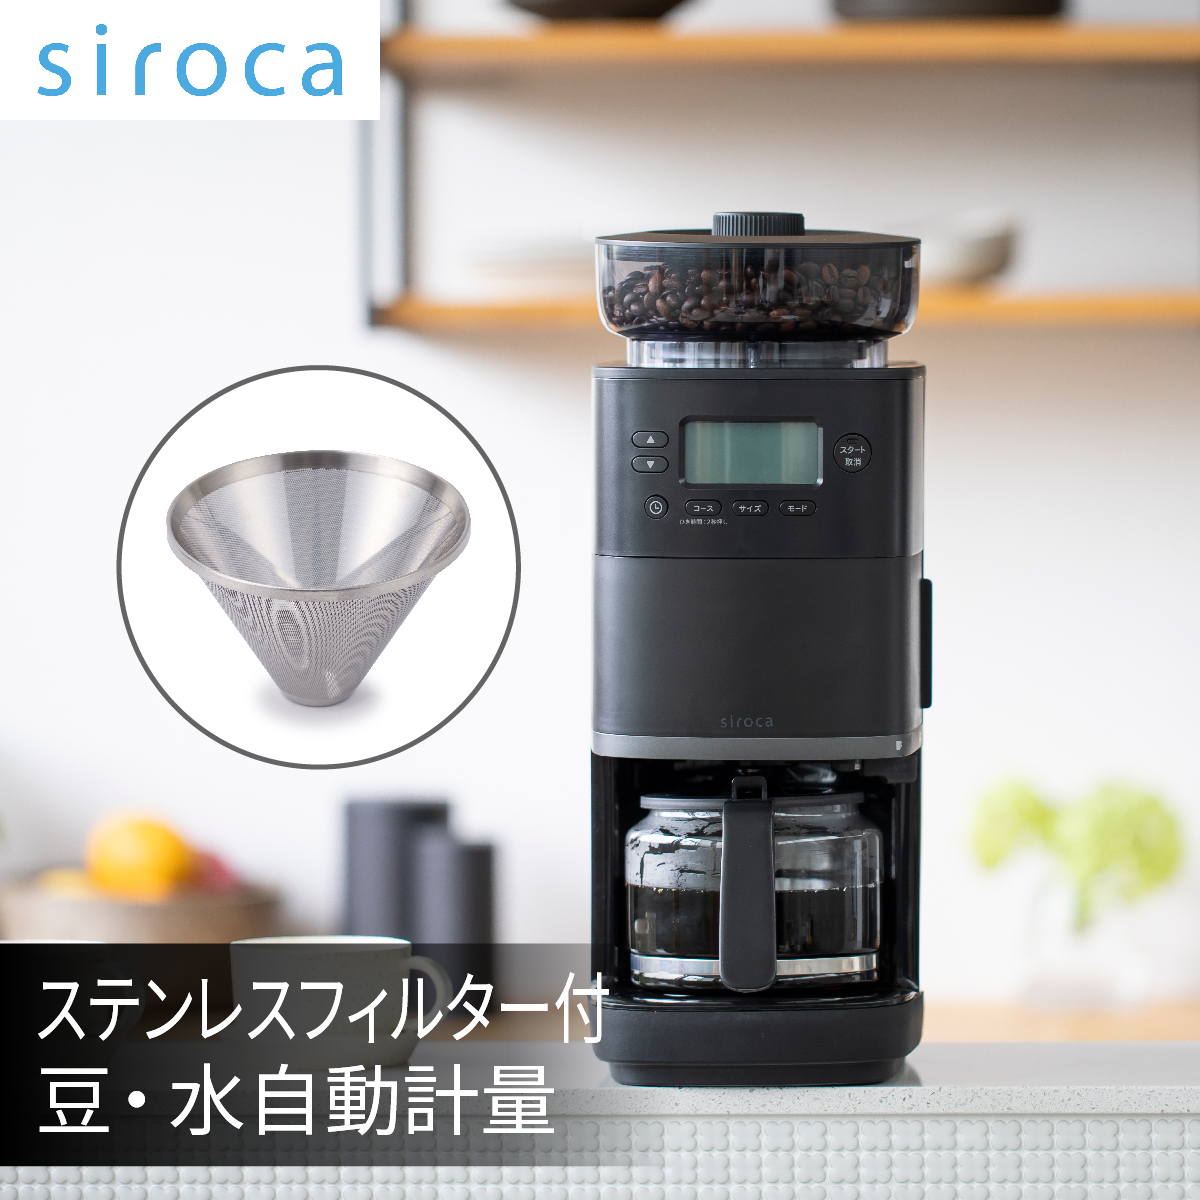 スマホ/家電/カメラシロカ  コーン式全自動コーヒーメーカー